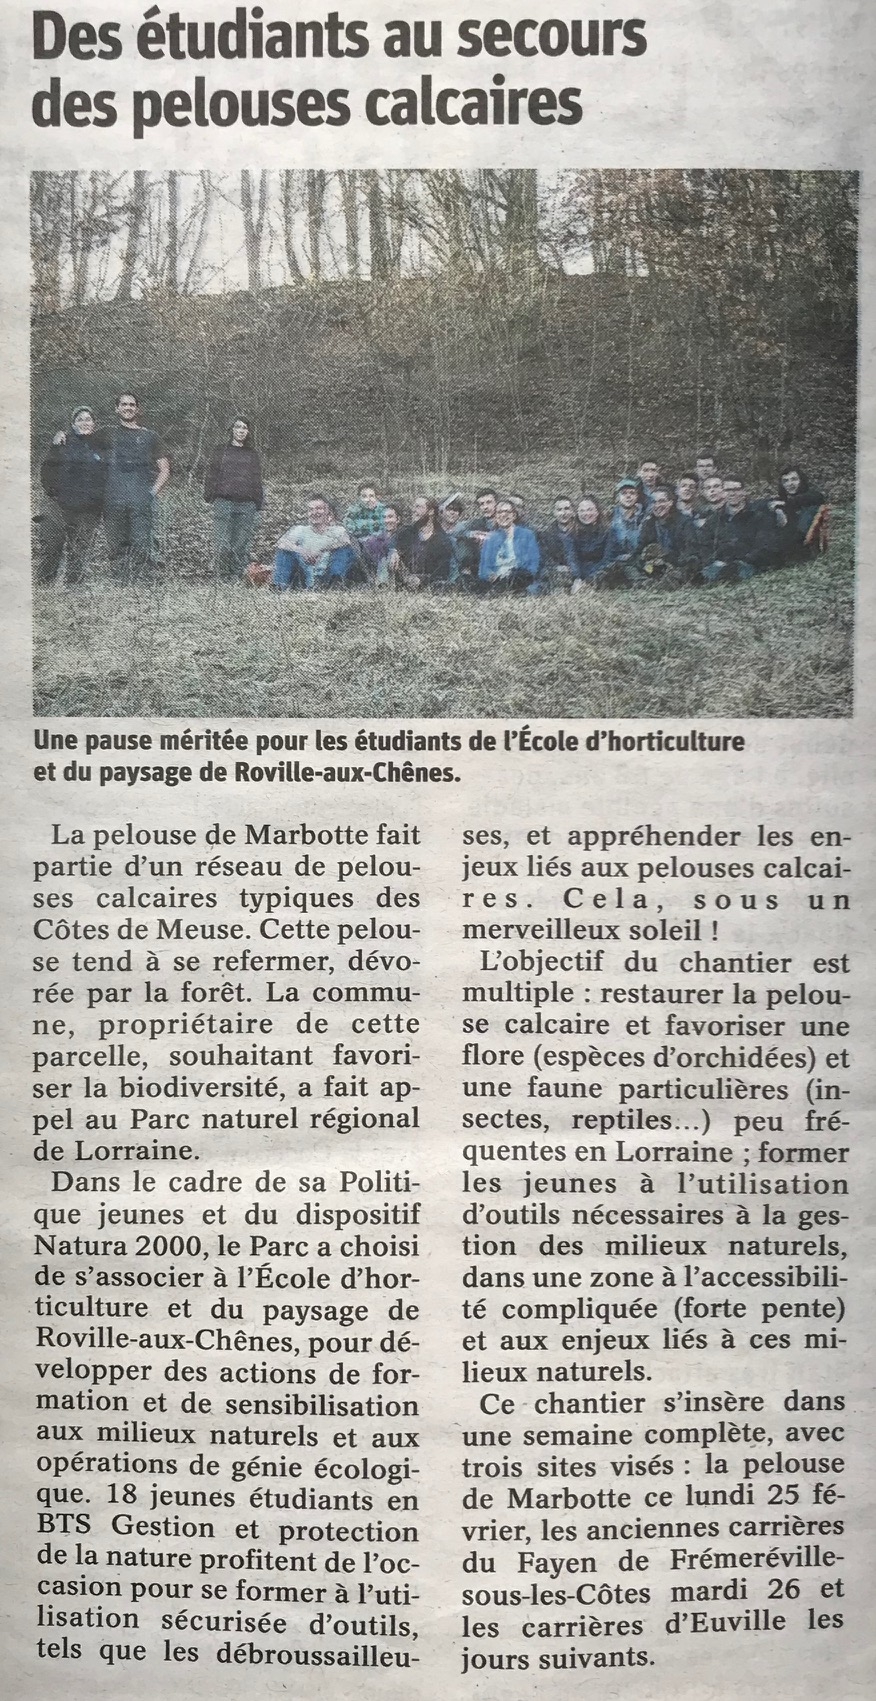 les élèves de l'école d'horticulture de Roville-aux-Chênes nettoient la pelouse calcaire de Frémeréville-sous-les-Côtes